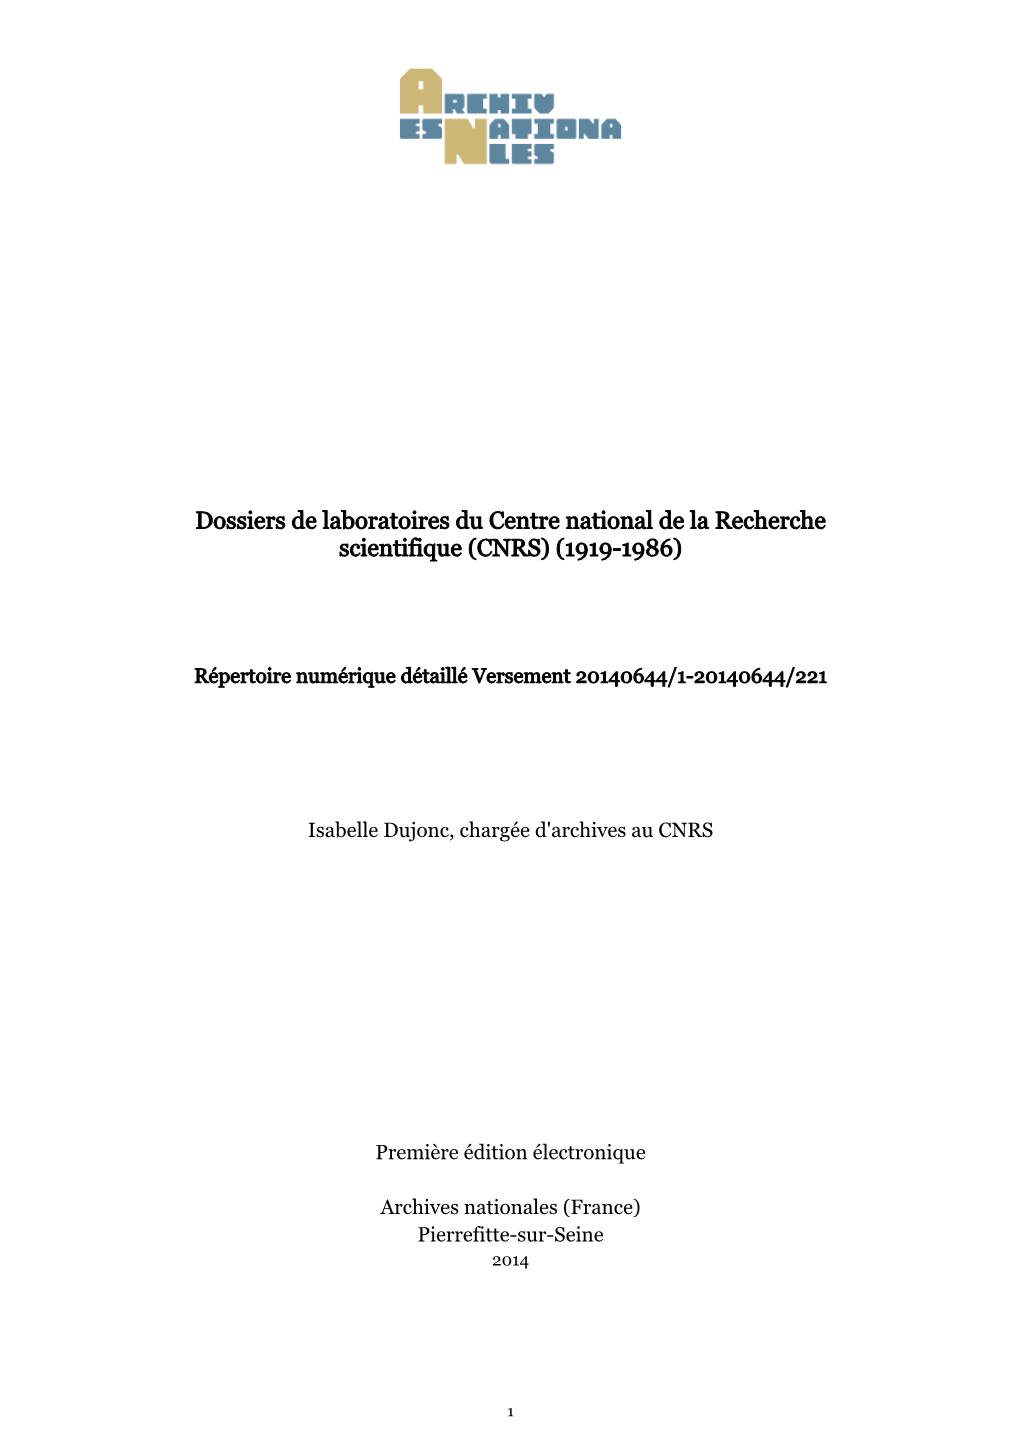 Dossiers De Laboratoires Du Centre National De La Recherche Scientifique (CNRS) (1919-1986)